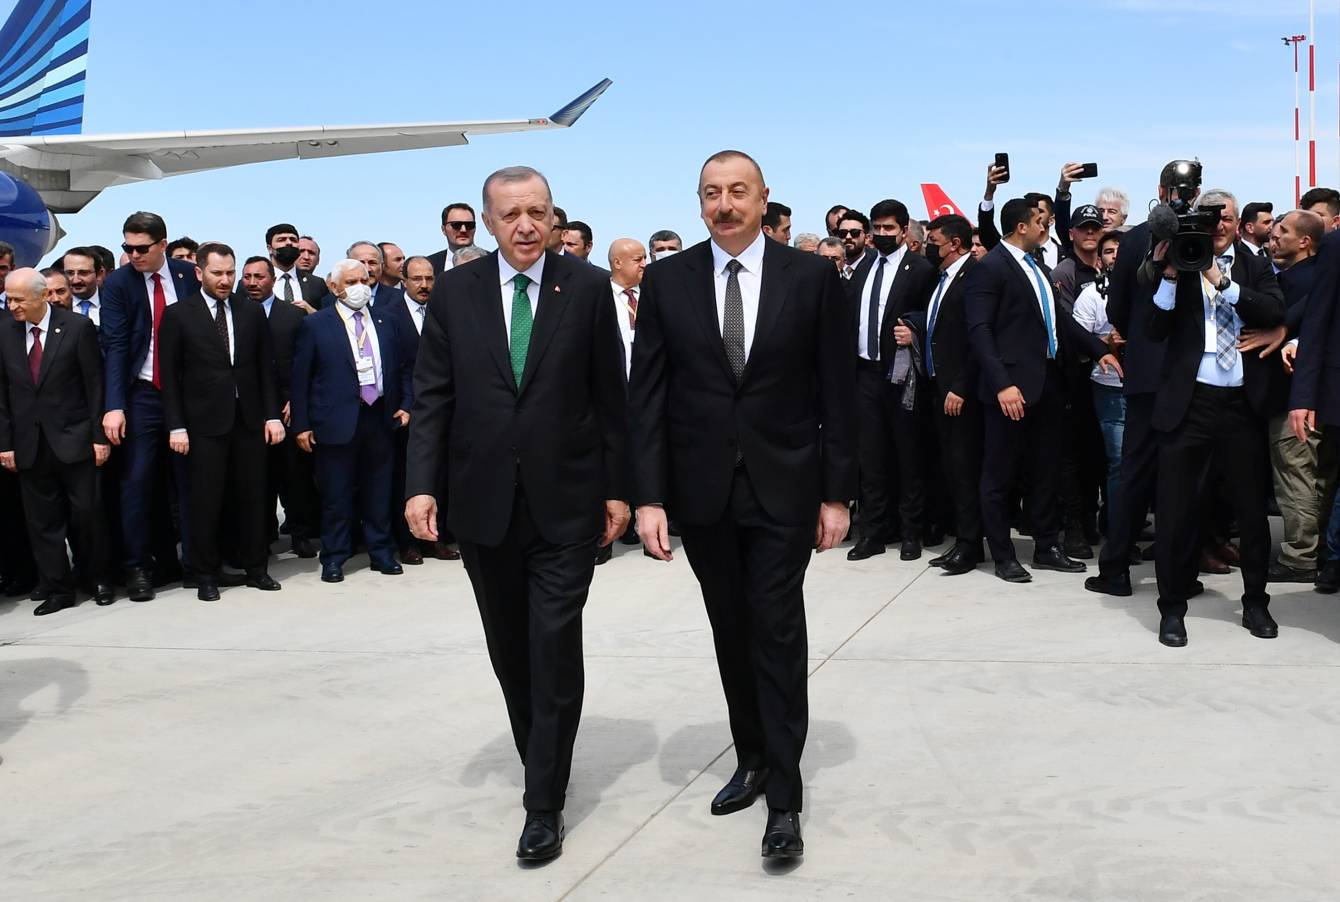 Azərbaycan və Türkiyə prezidentləri Ankaranın Esenboğa Hava Limanında GÖRÜŞDÜLƏR